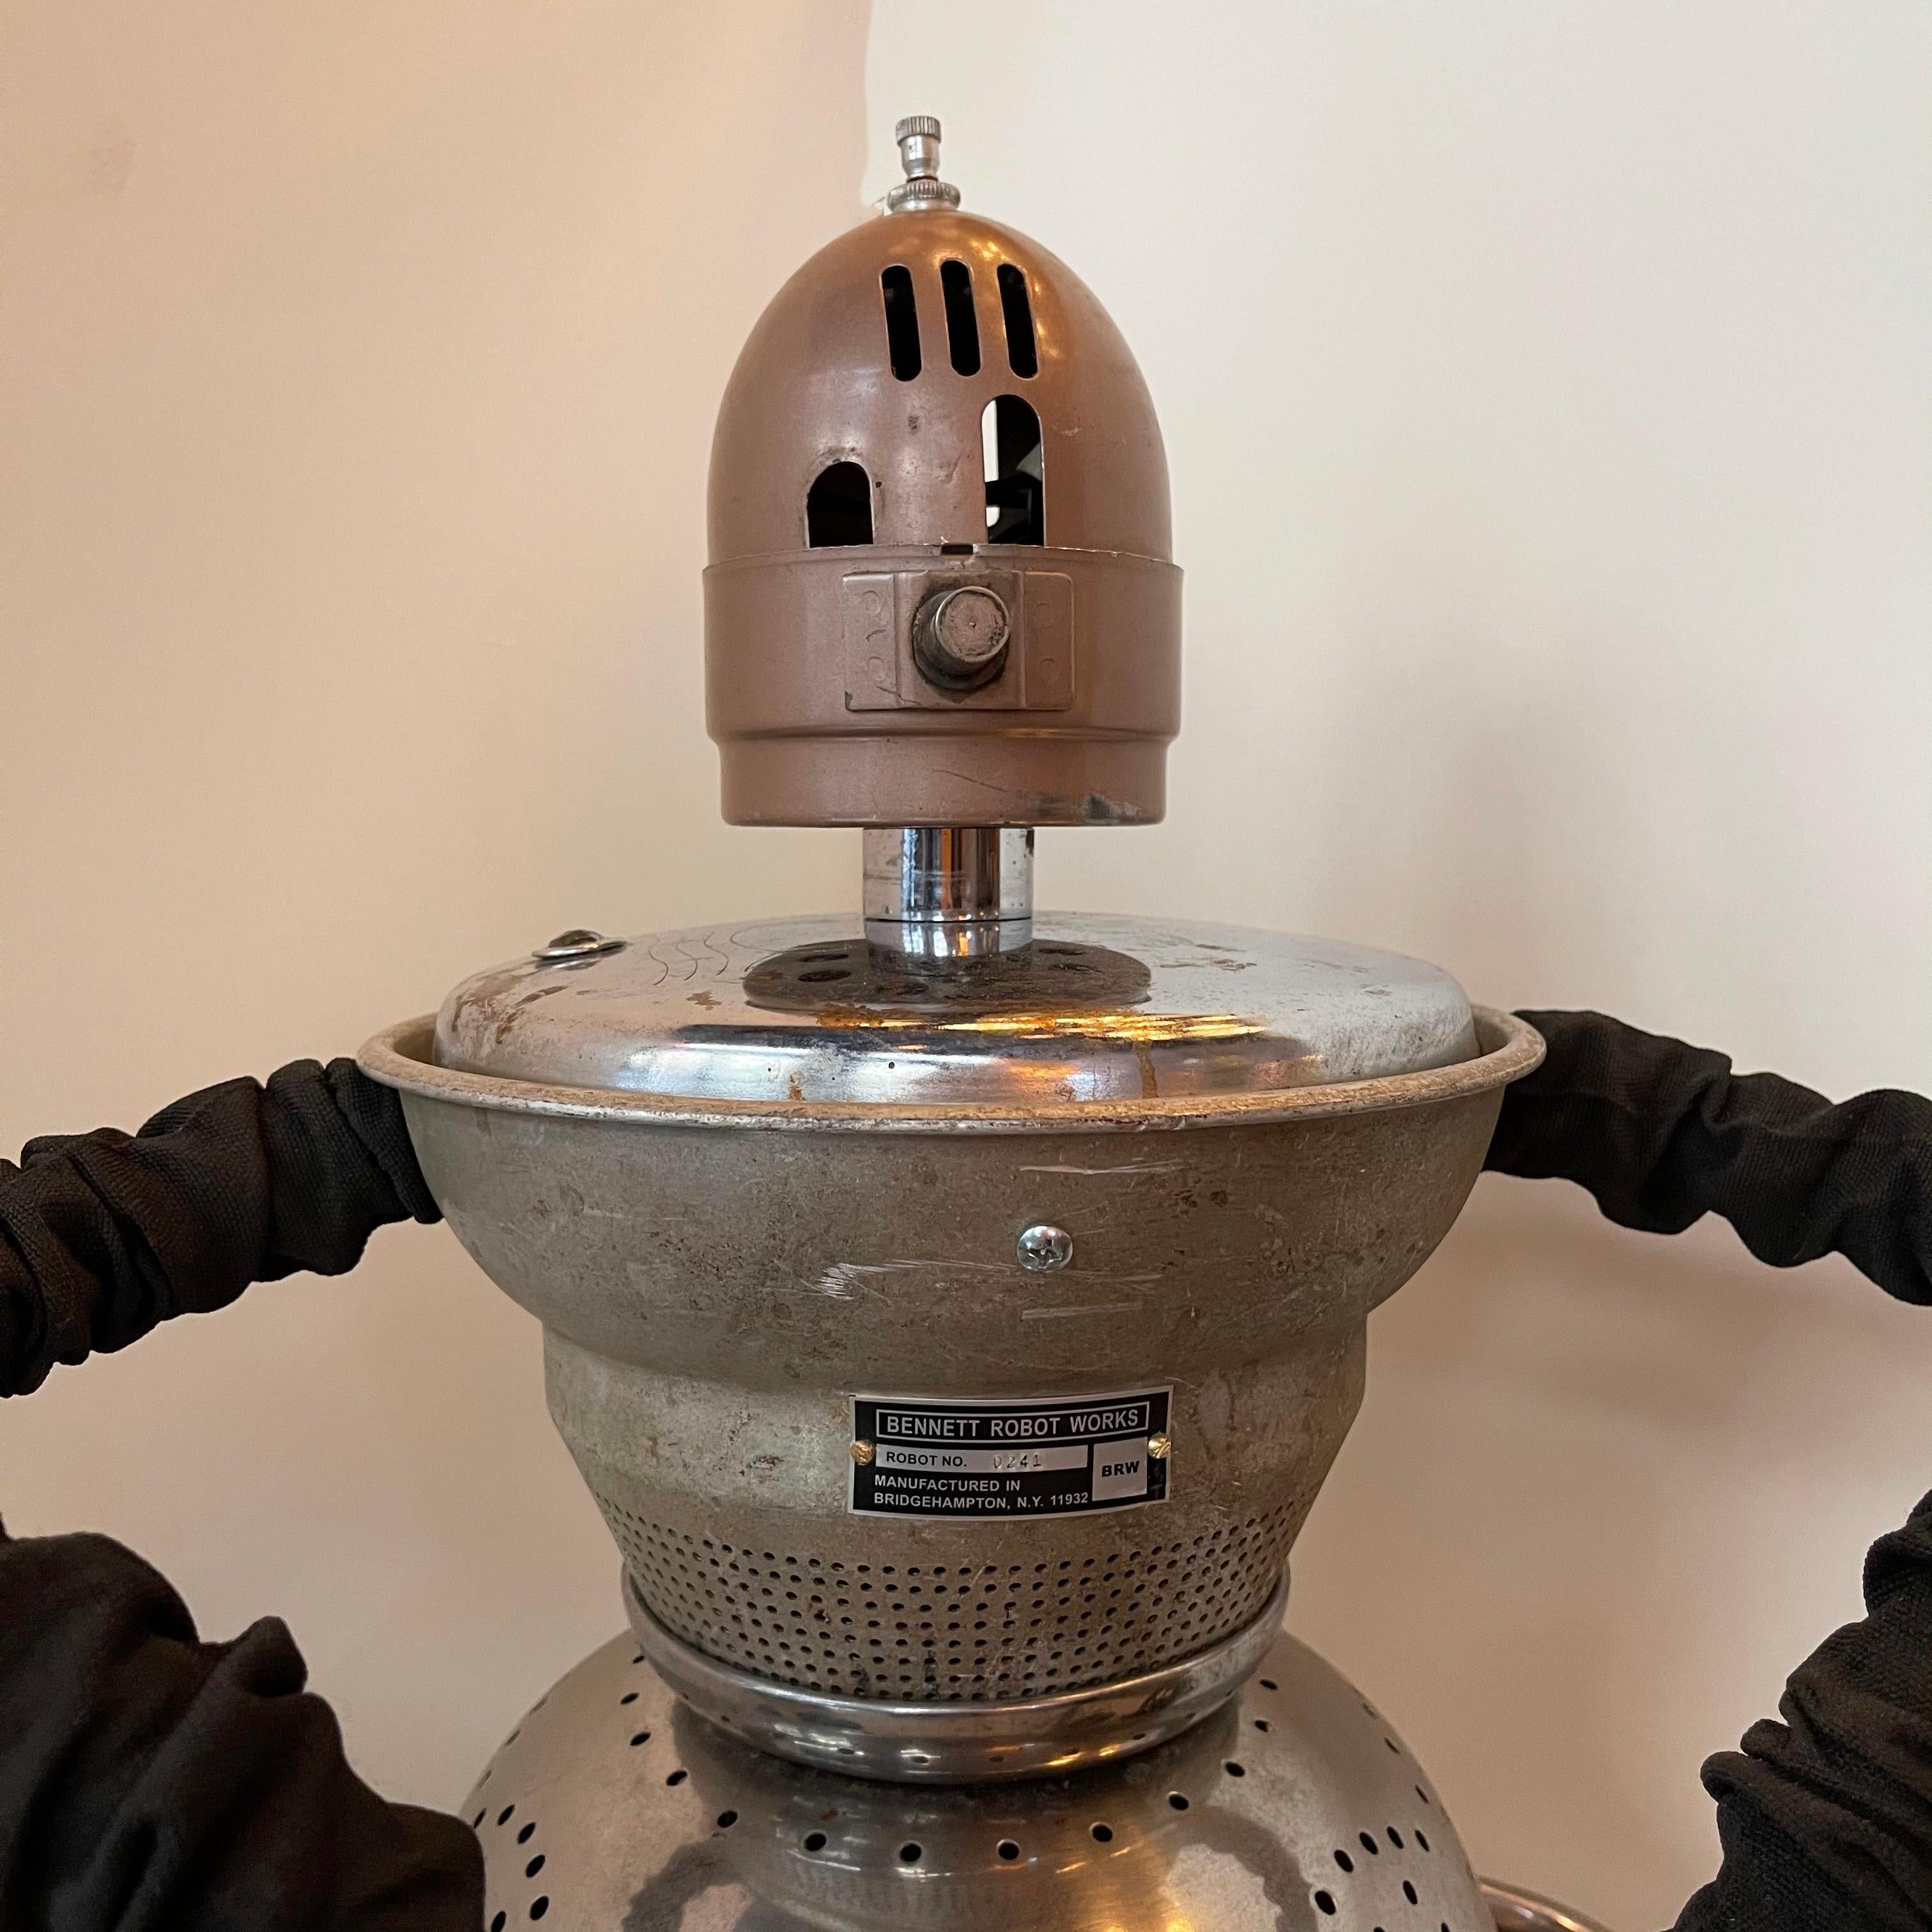 Metal Chef Robot Sculpture by Bennett Robot Works